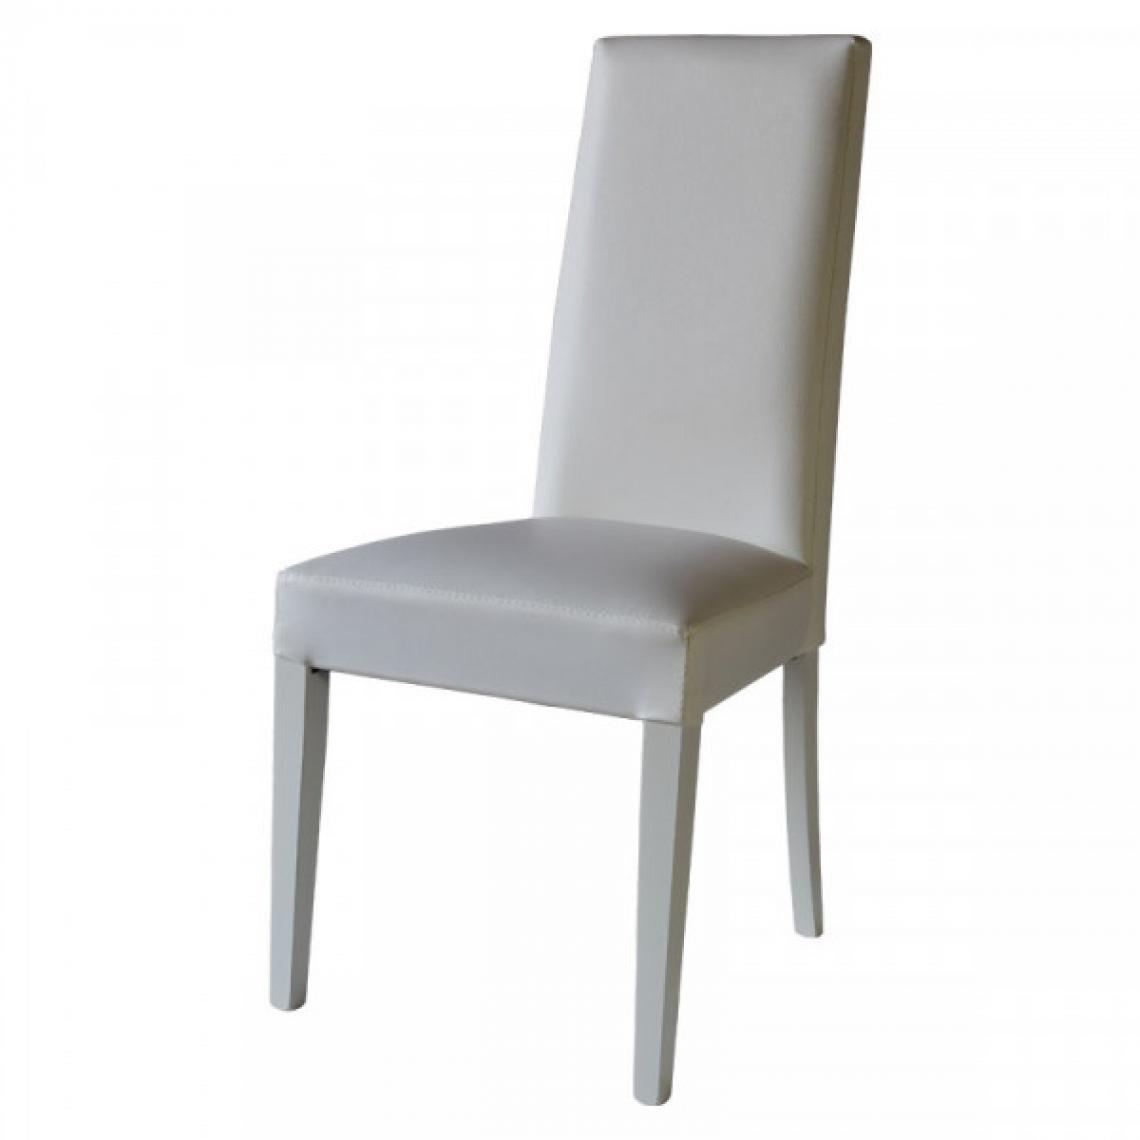 Dansmamaison - Duo de chaises en similicuir Blanc - VENISE - L 54 x l 46 x H 99 cm - Chaises